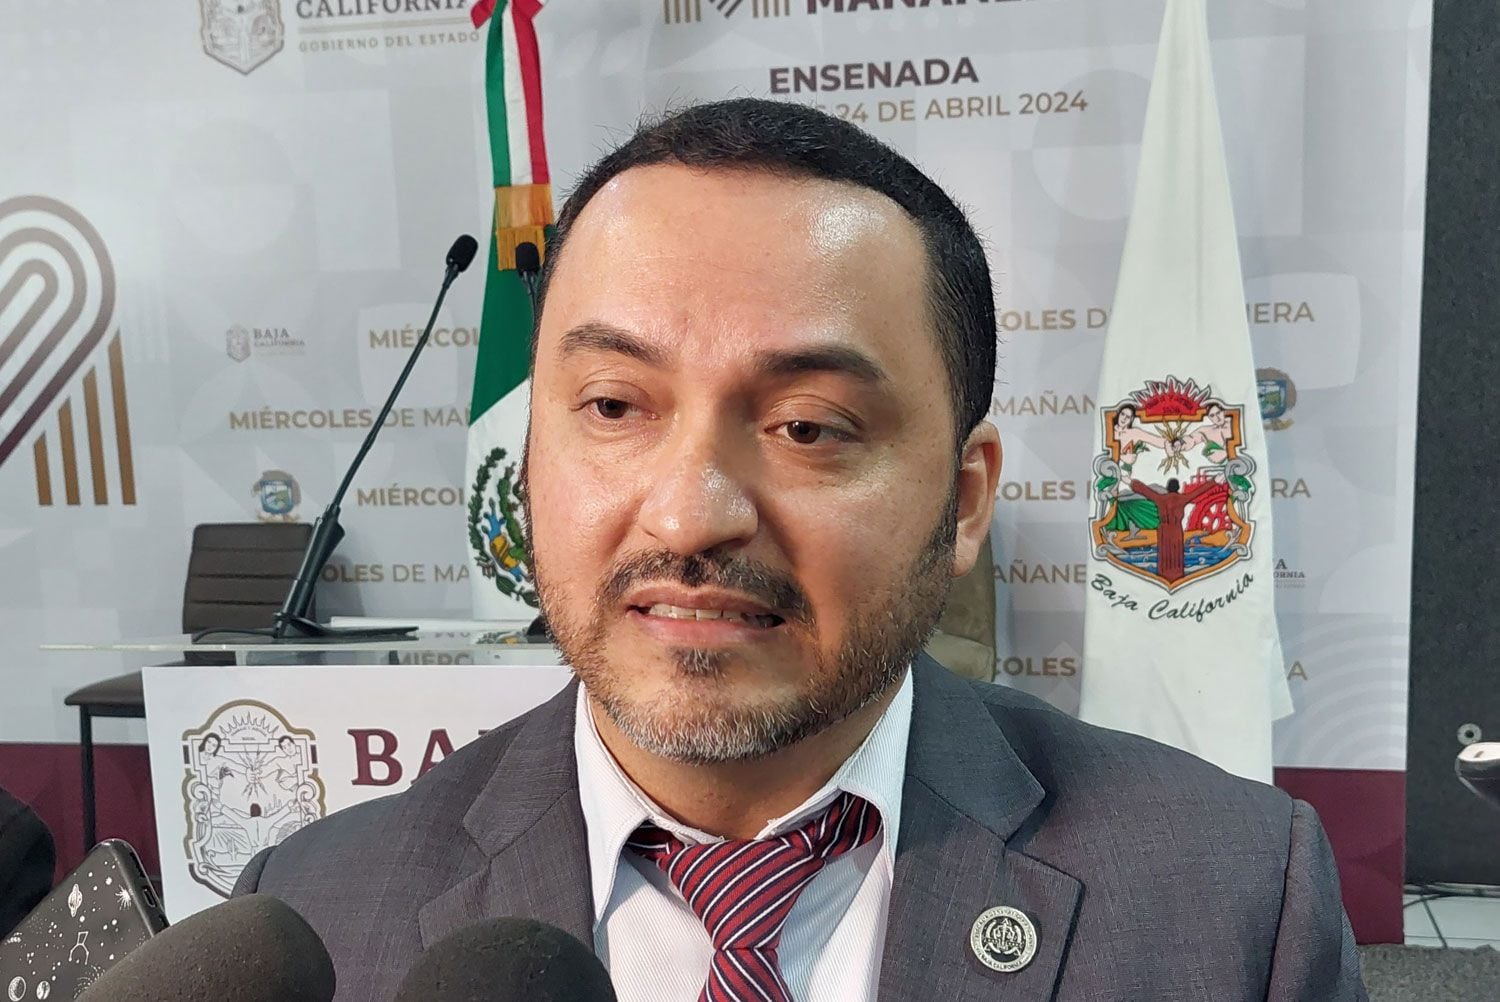 Gracielo Cebreros Millán, fiscal regional de Ensenada.